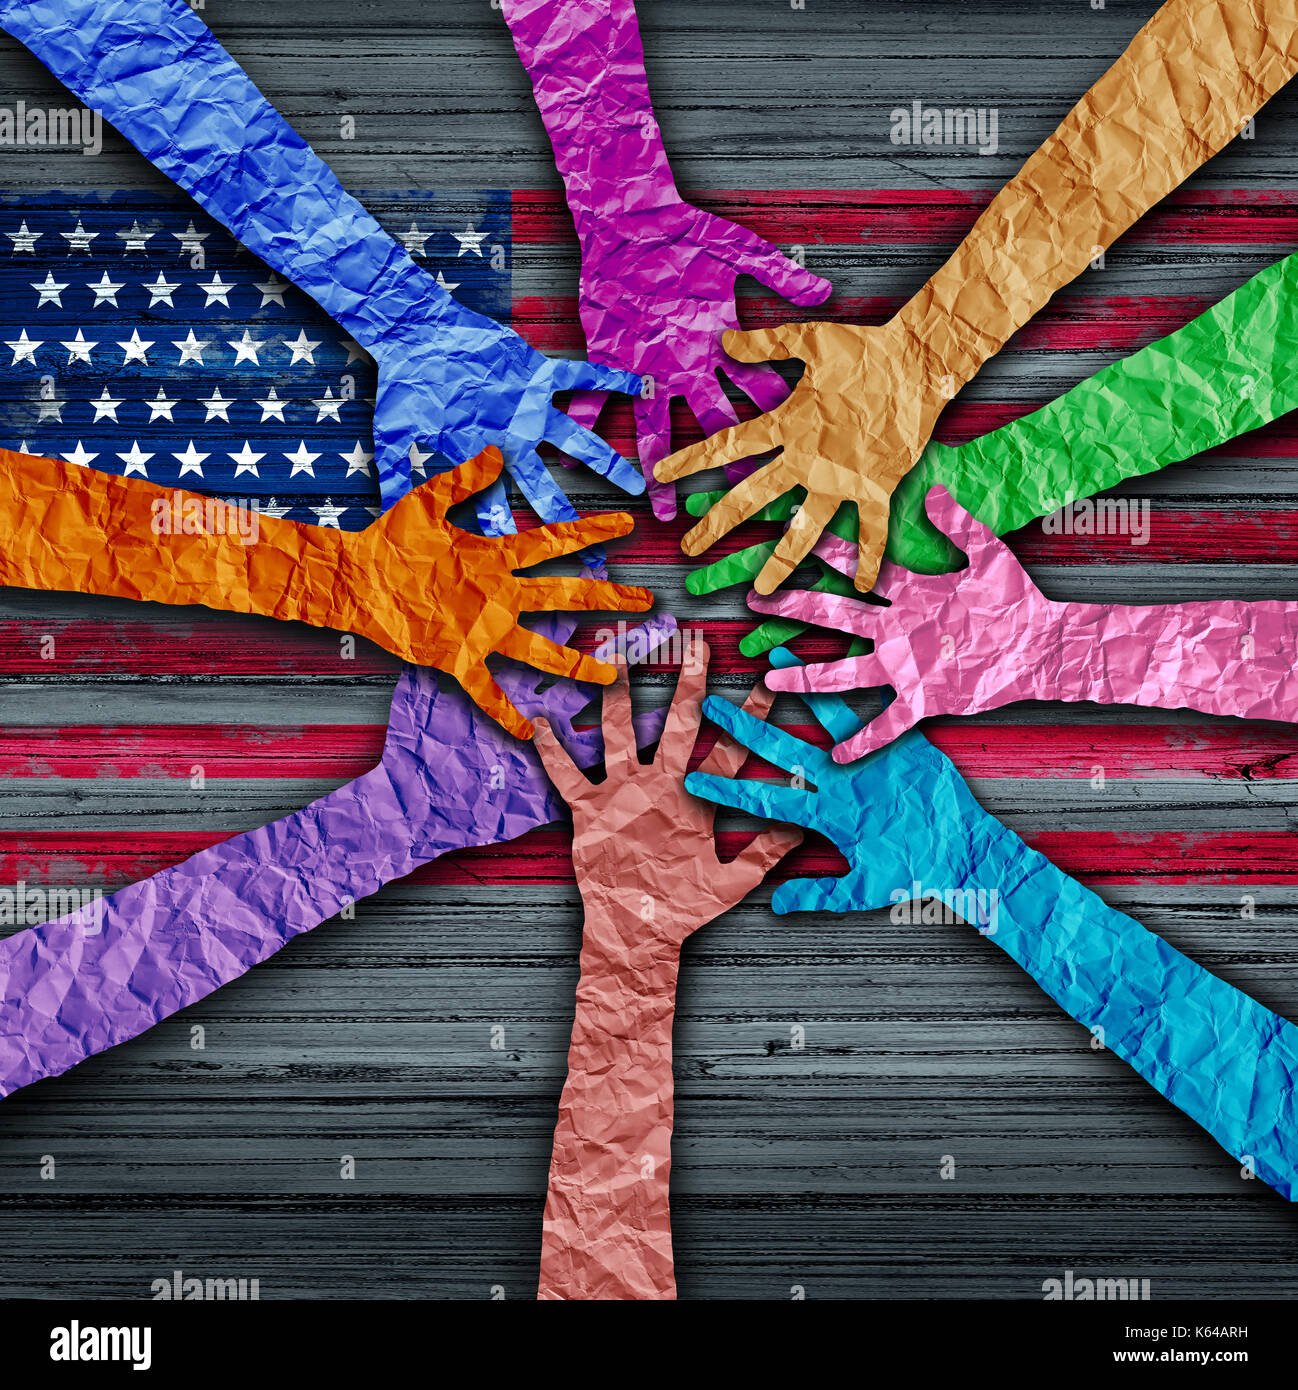 Diversità americano tenendo come diverse mani fatte di carta sgualcita collegati insieme come un concetto per il cittadino della solidarietà e patriottico. Foto Stock